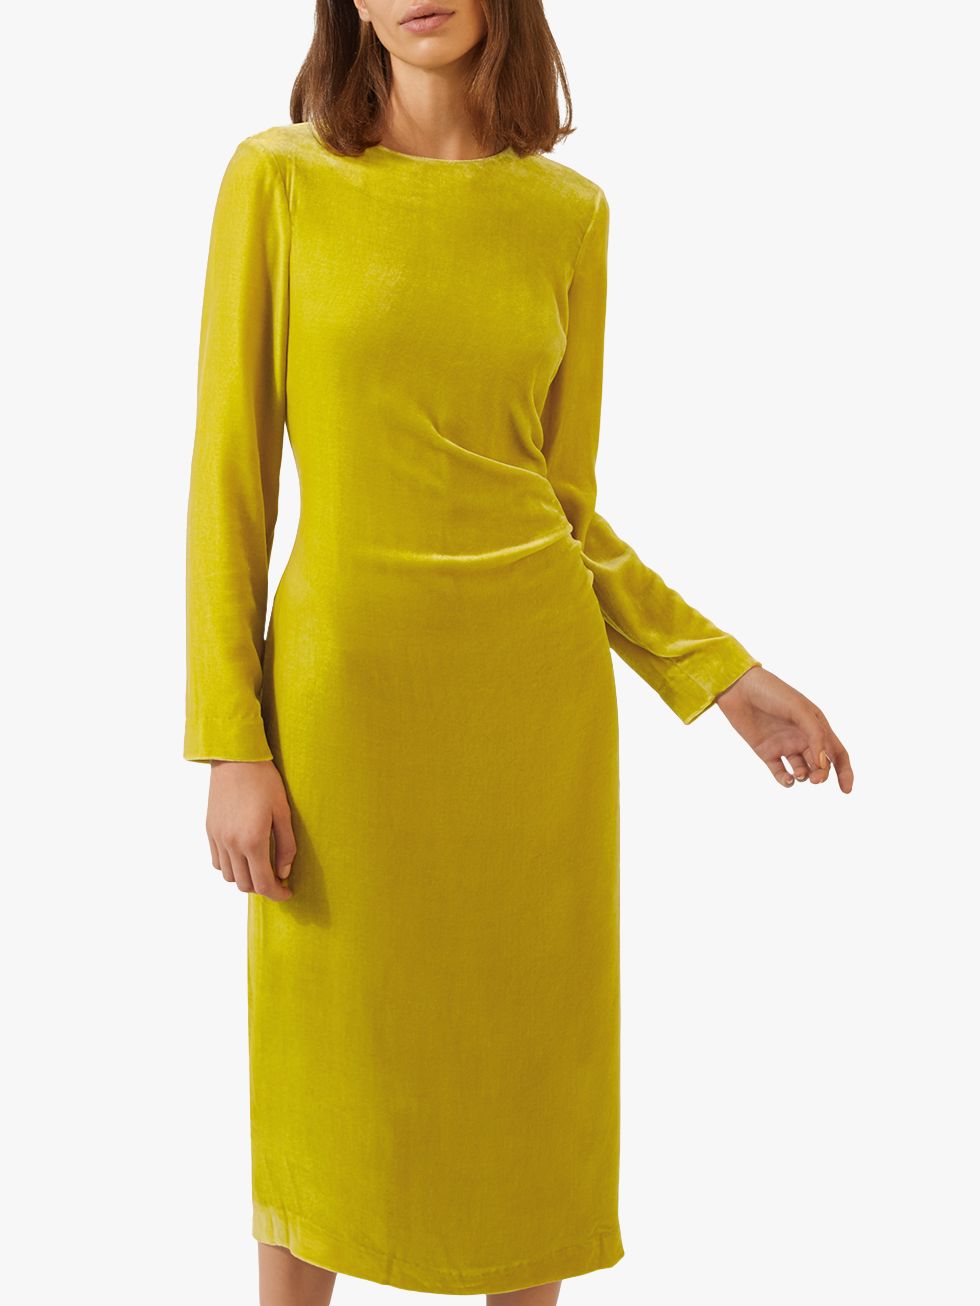 jigsaw yellow velvet dress